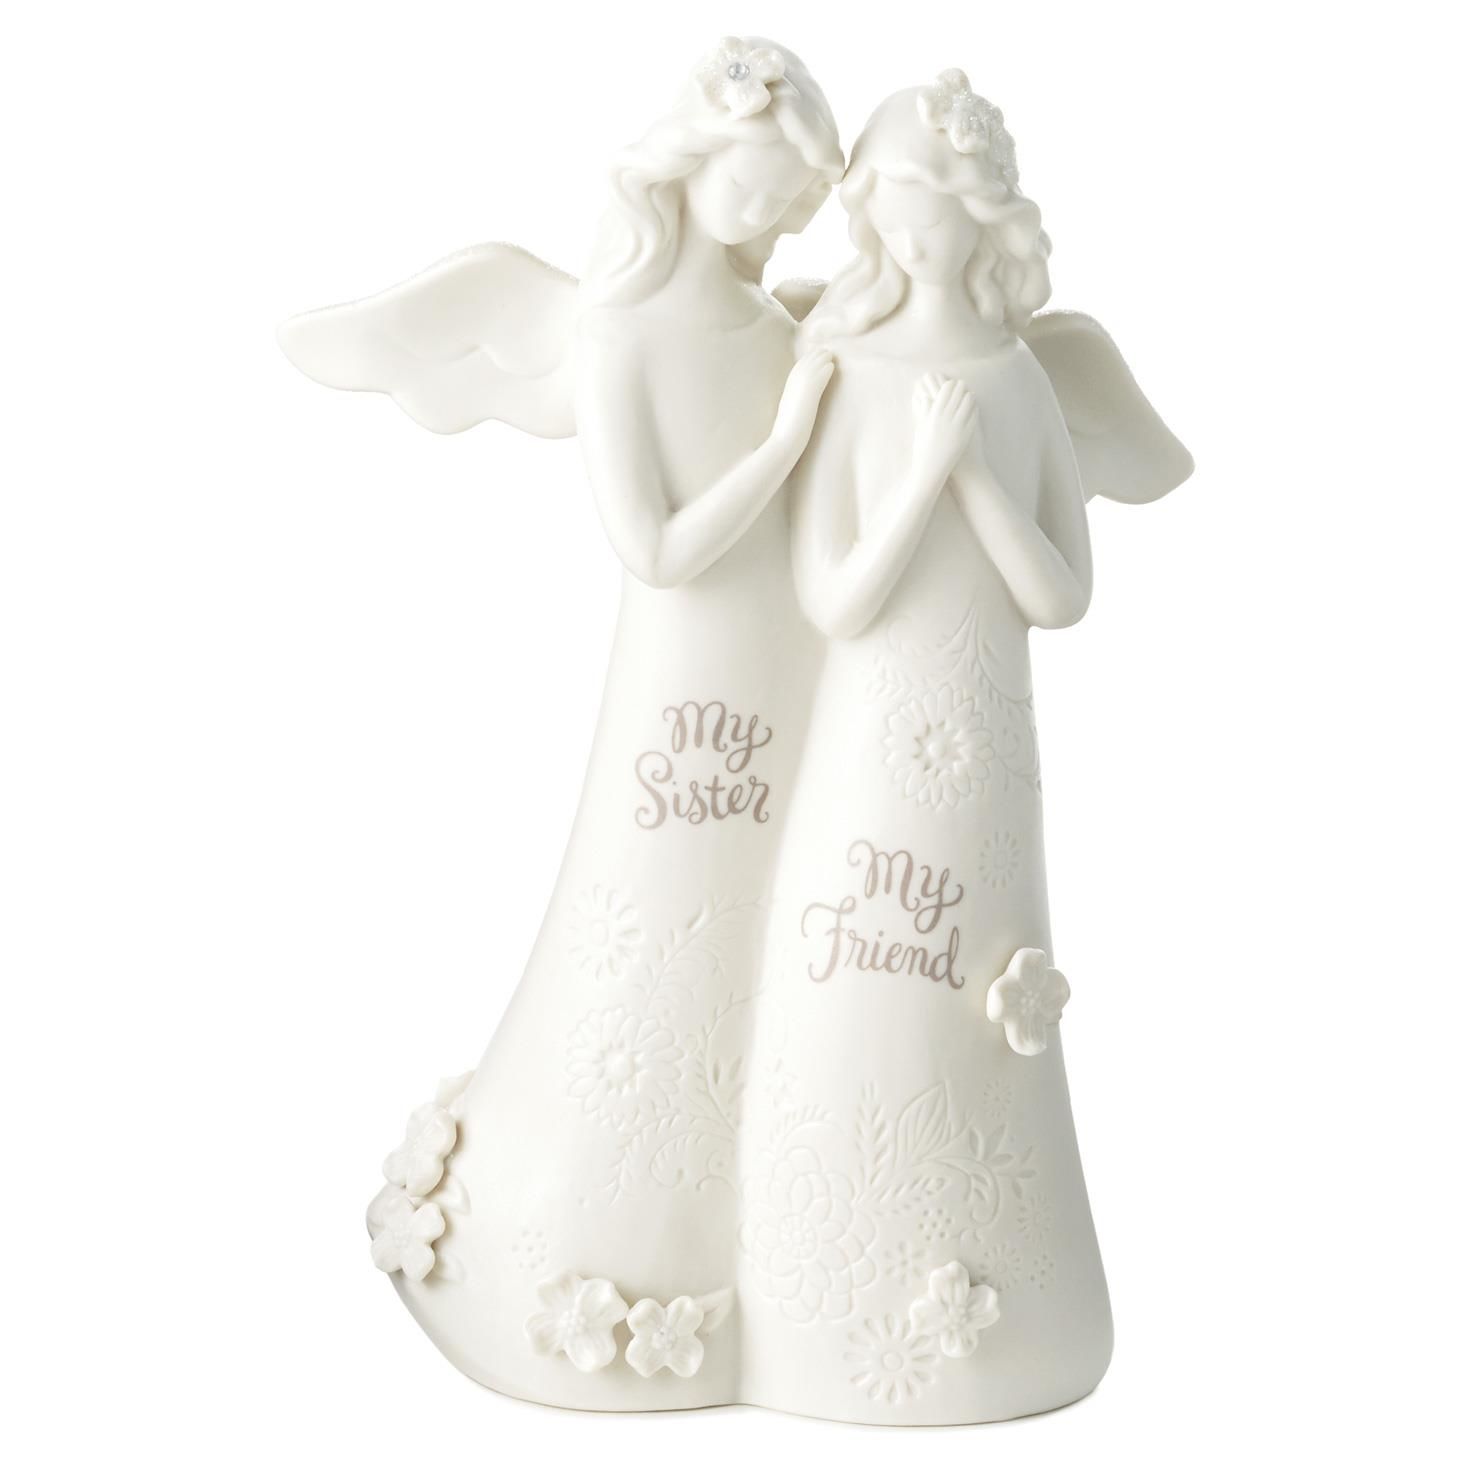 Sisters Angel Figurine - Figurines - Hallmark